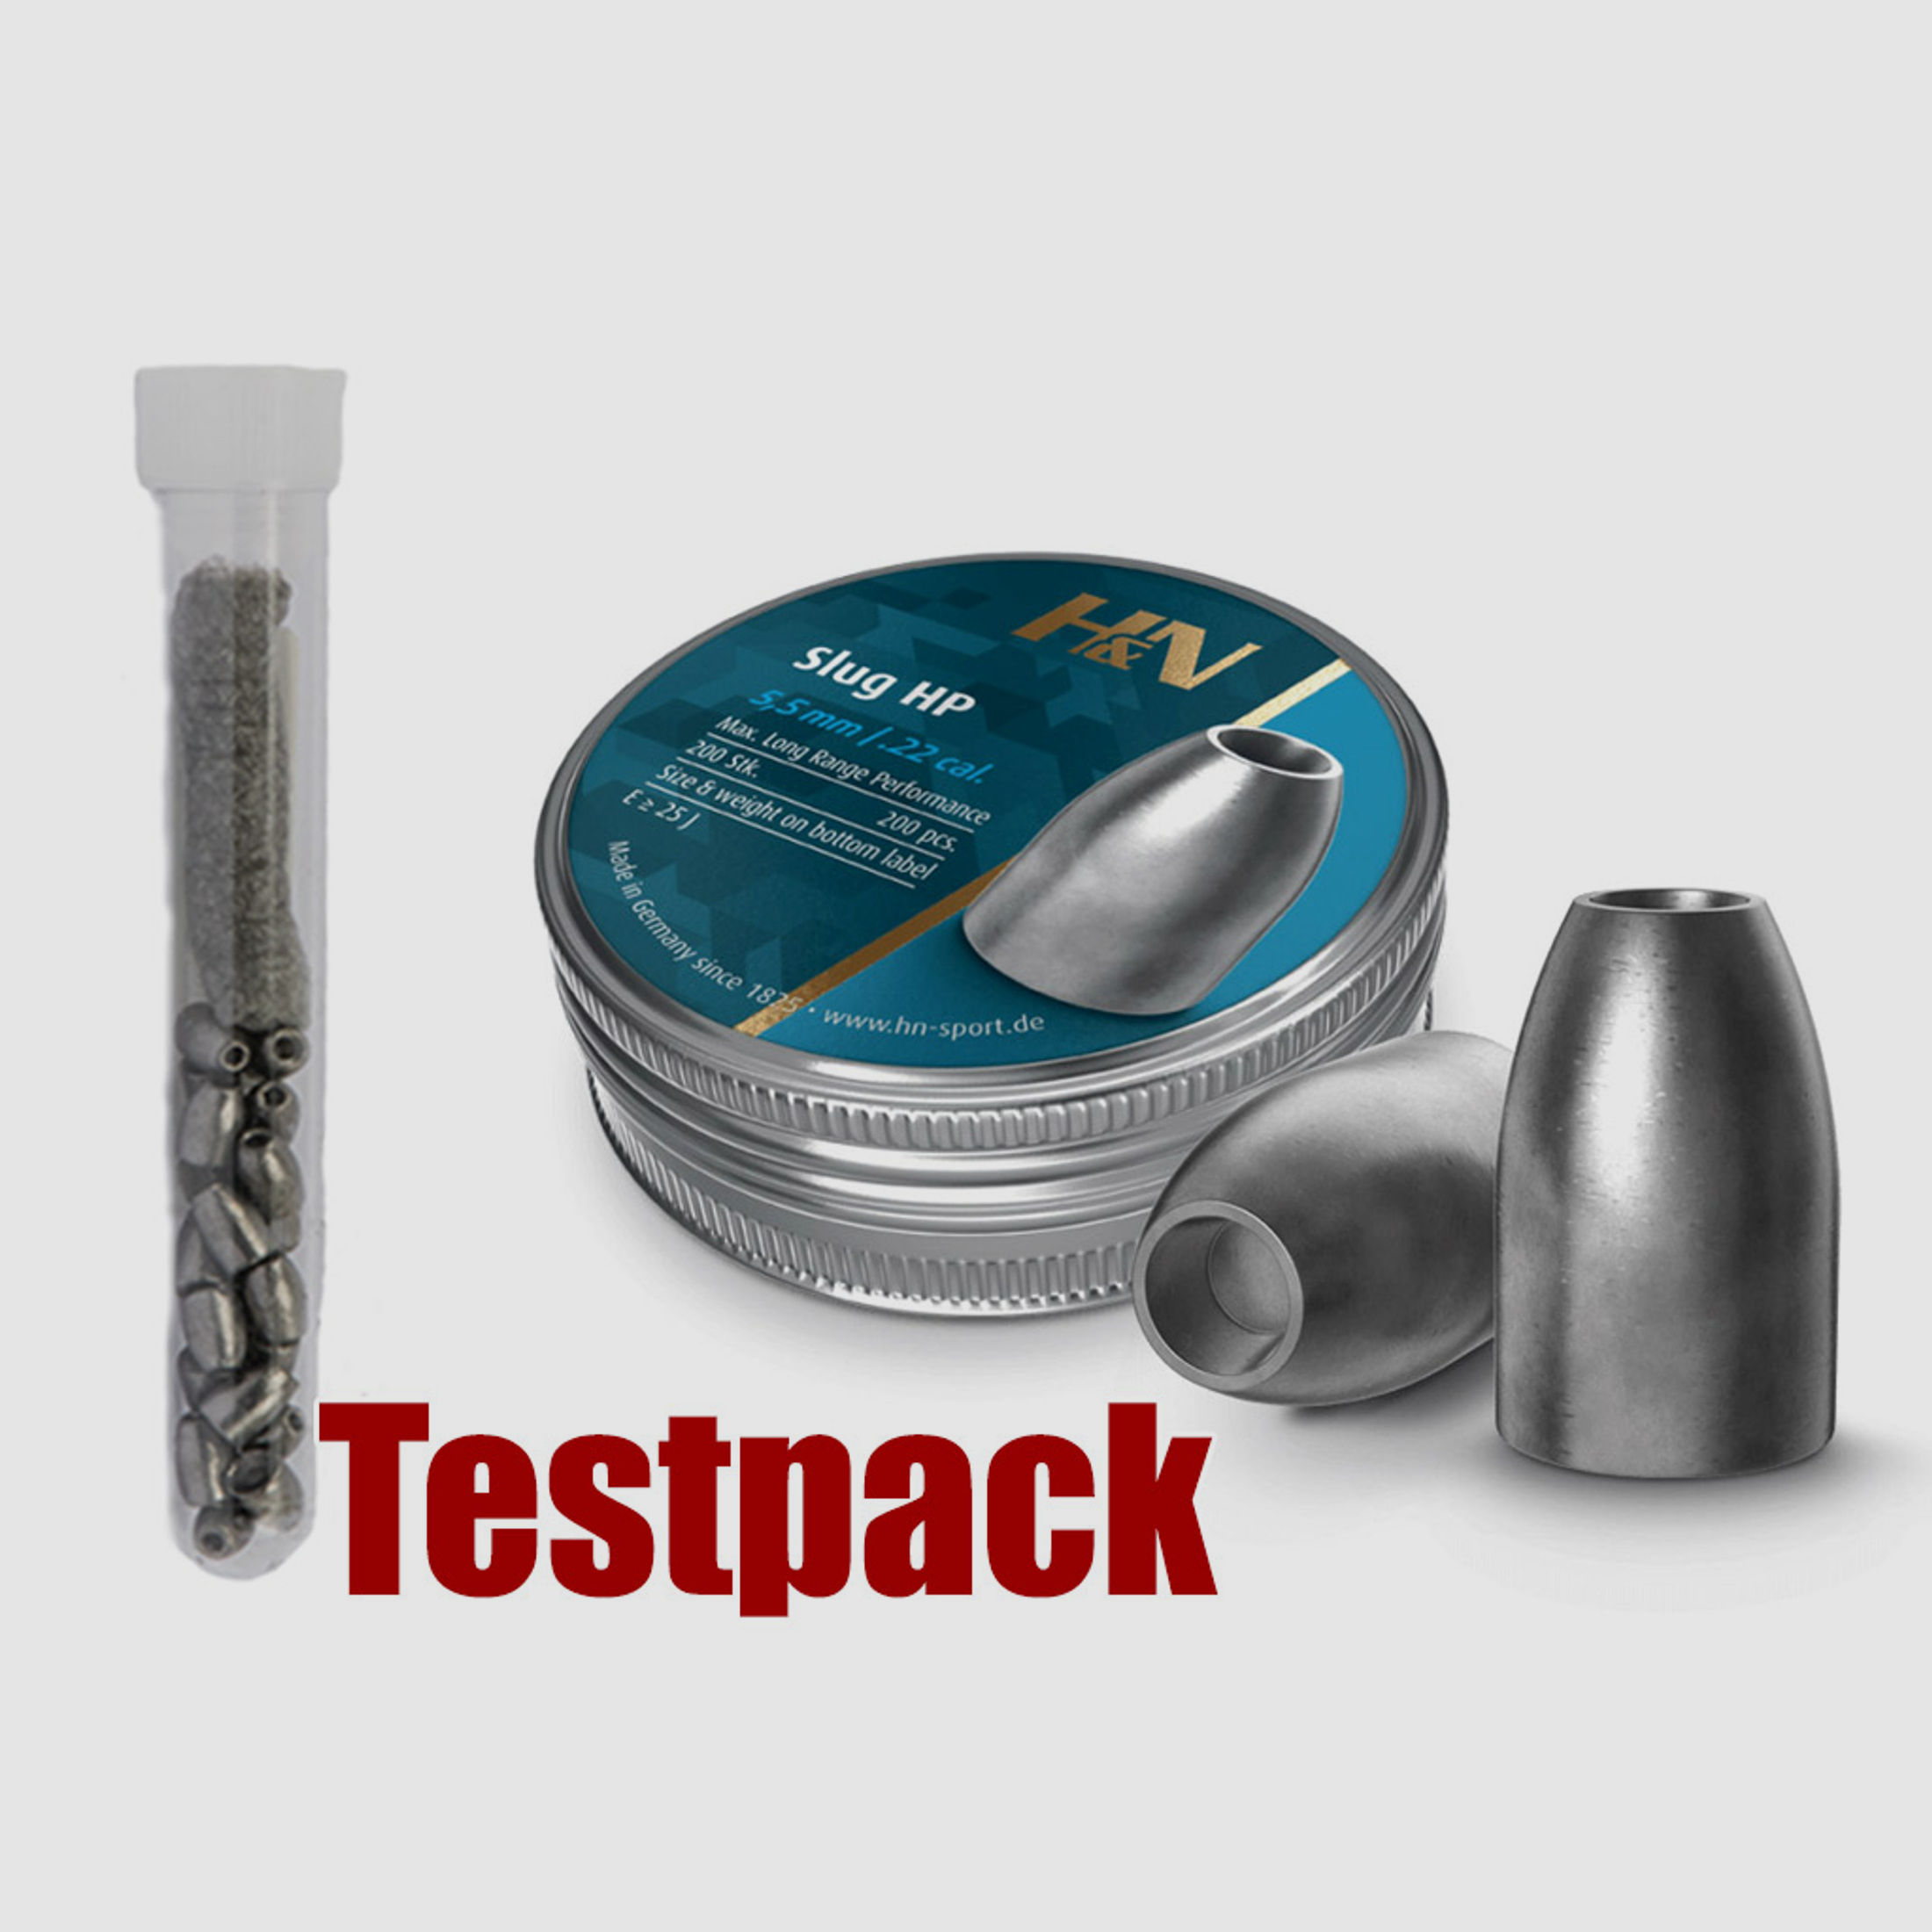 Testpack - H&N Slug HP Diabolo, Hohlspitz, glatt, 1,49 g, 23 gr, Kaliber 5,51 mm, 20 StĂĽck